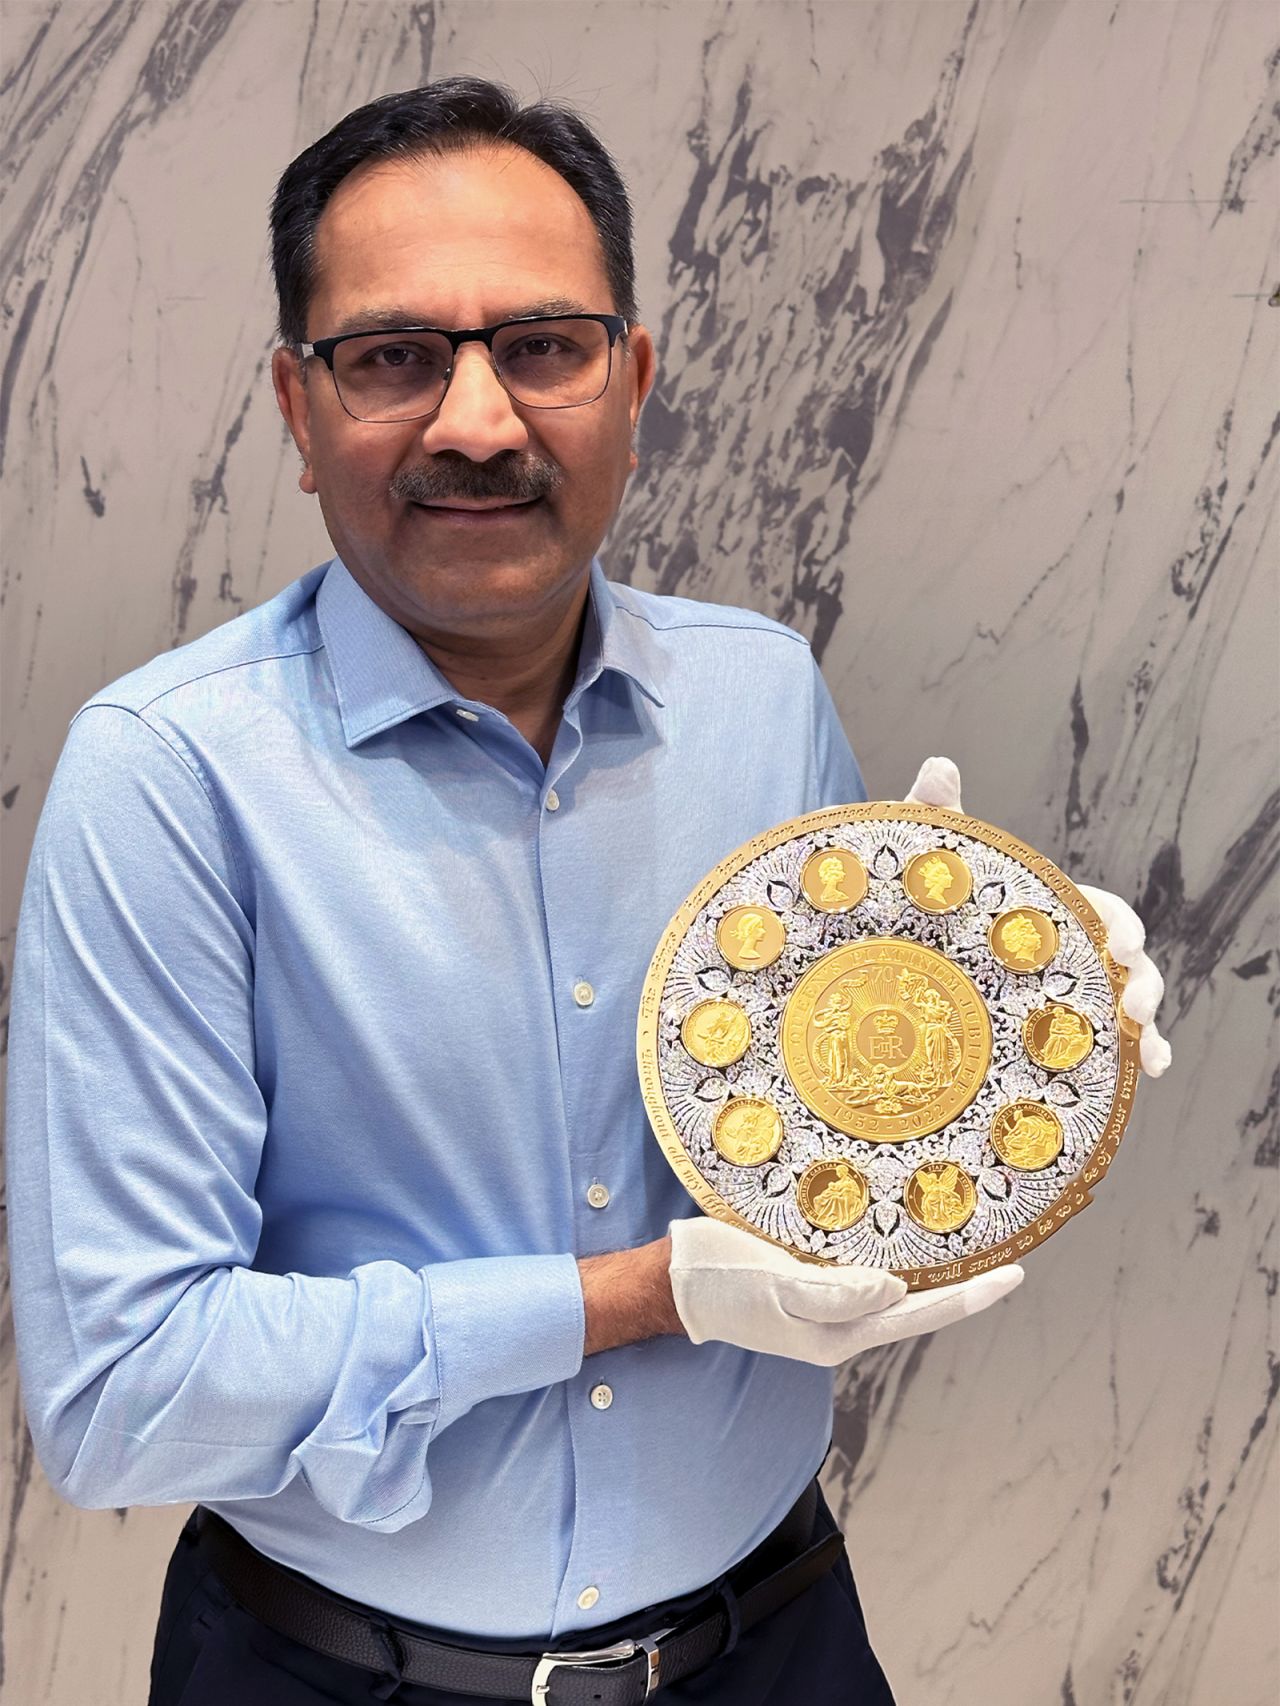 Бізнесмен Санджив Мехта, який придбав права на Ост-Індську компанію в 2005 році, позує з інкрустованою діамантами монетою.